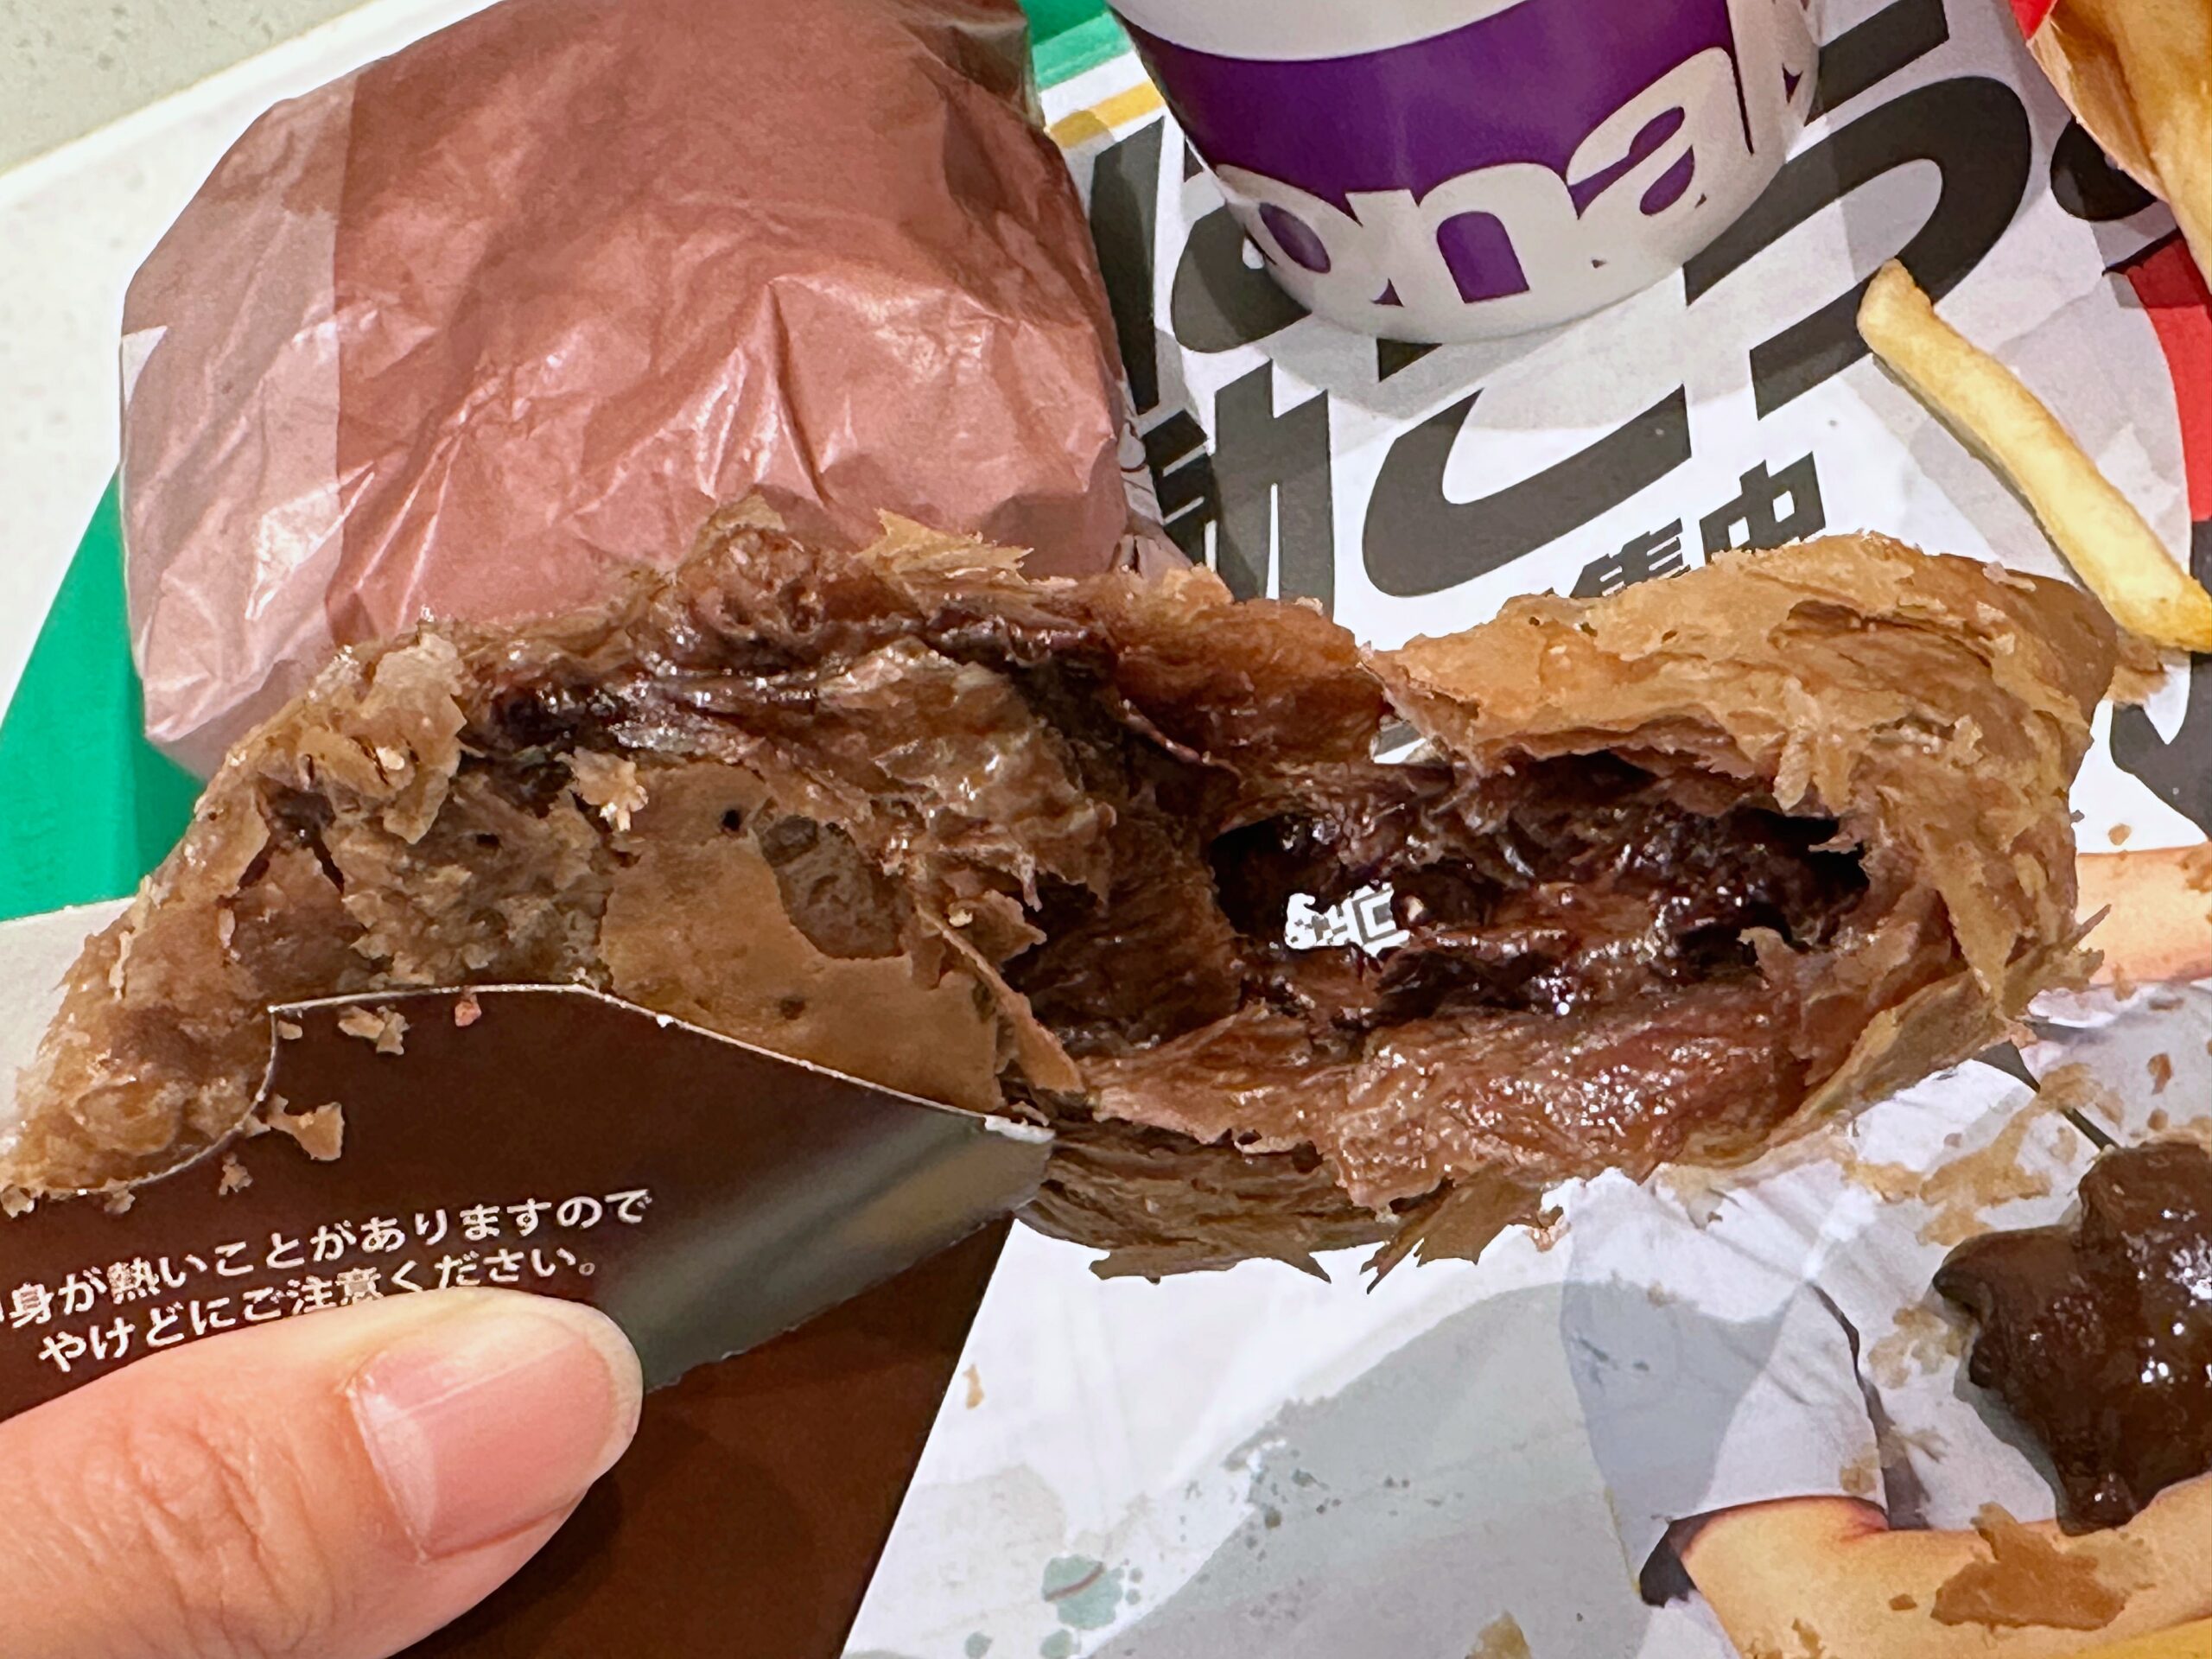 日本麥當勞期間限定，三角巧克力派終於吃到了 日本麥當勞菜單、價格